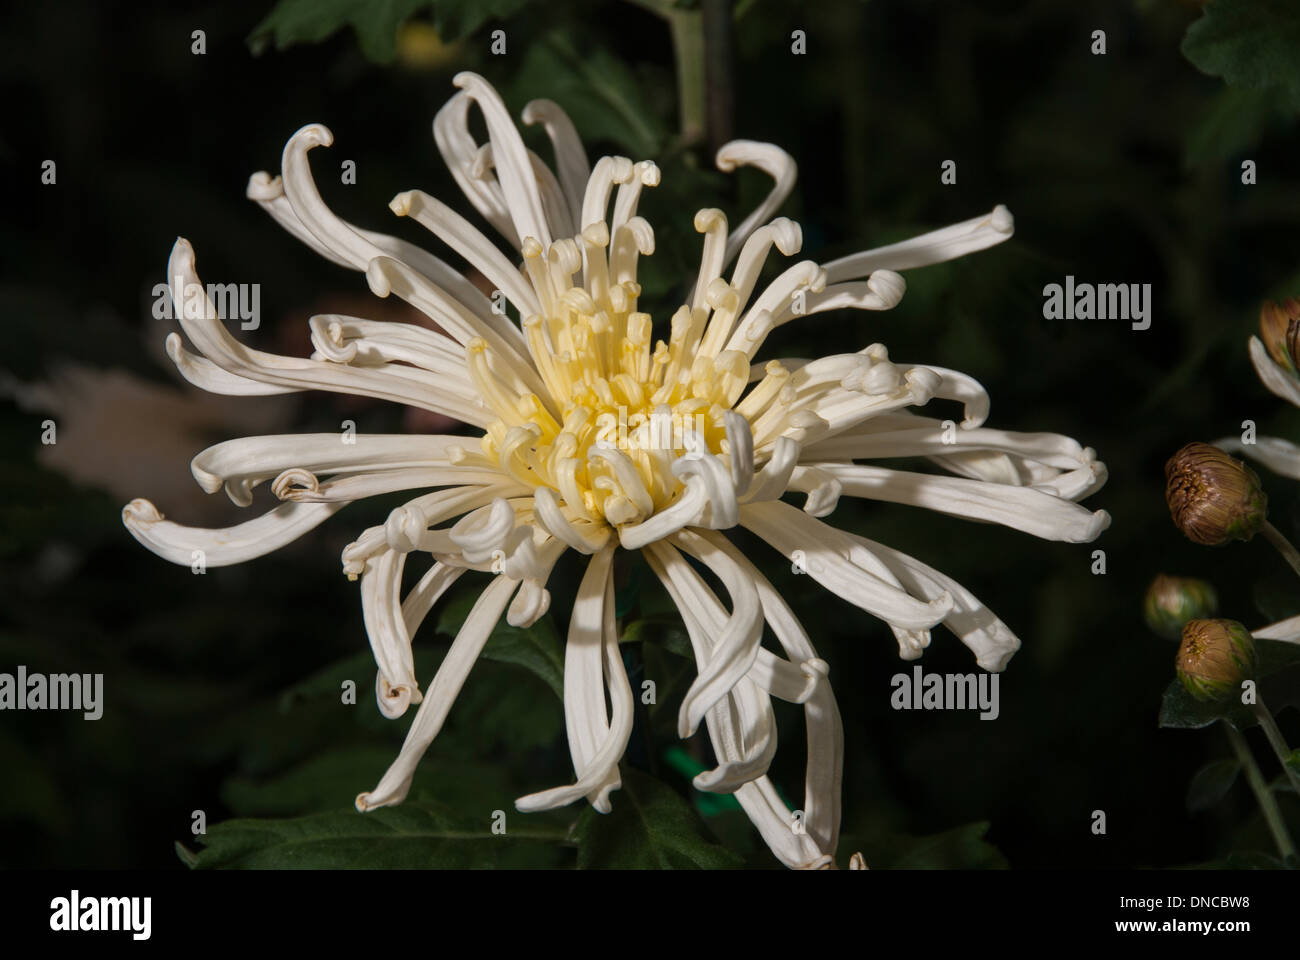 White and yellow spider chrysanthemum Stock Photo